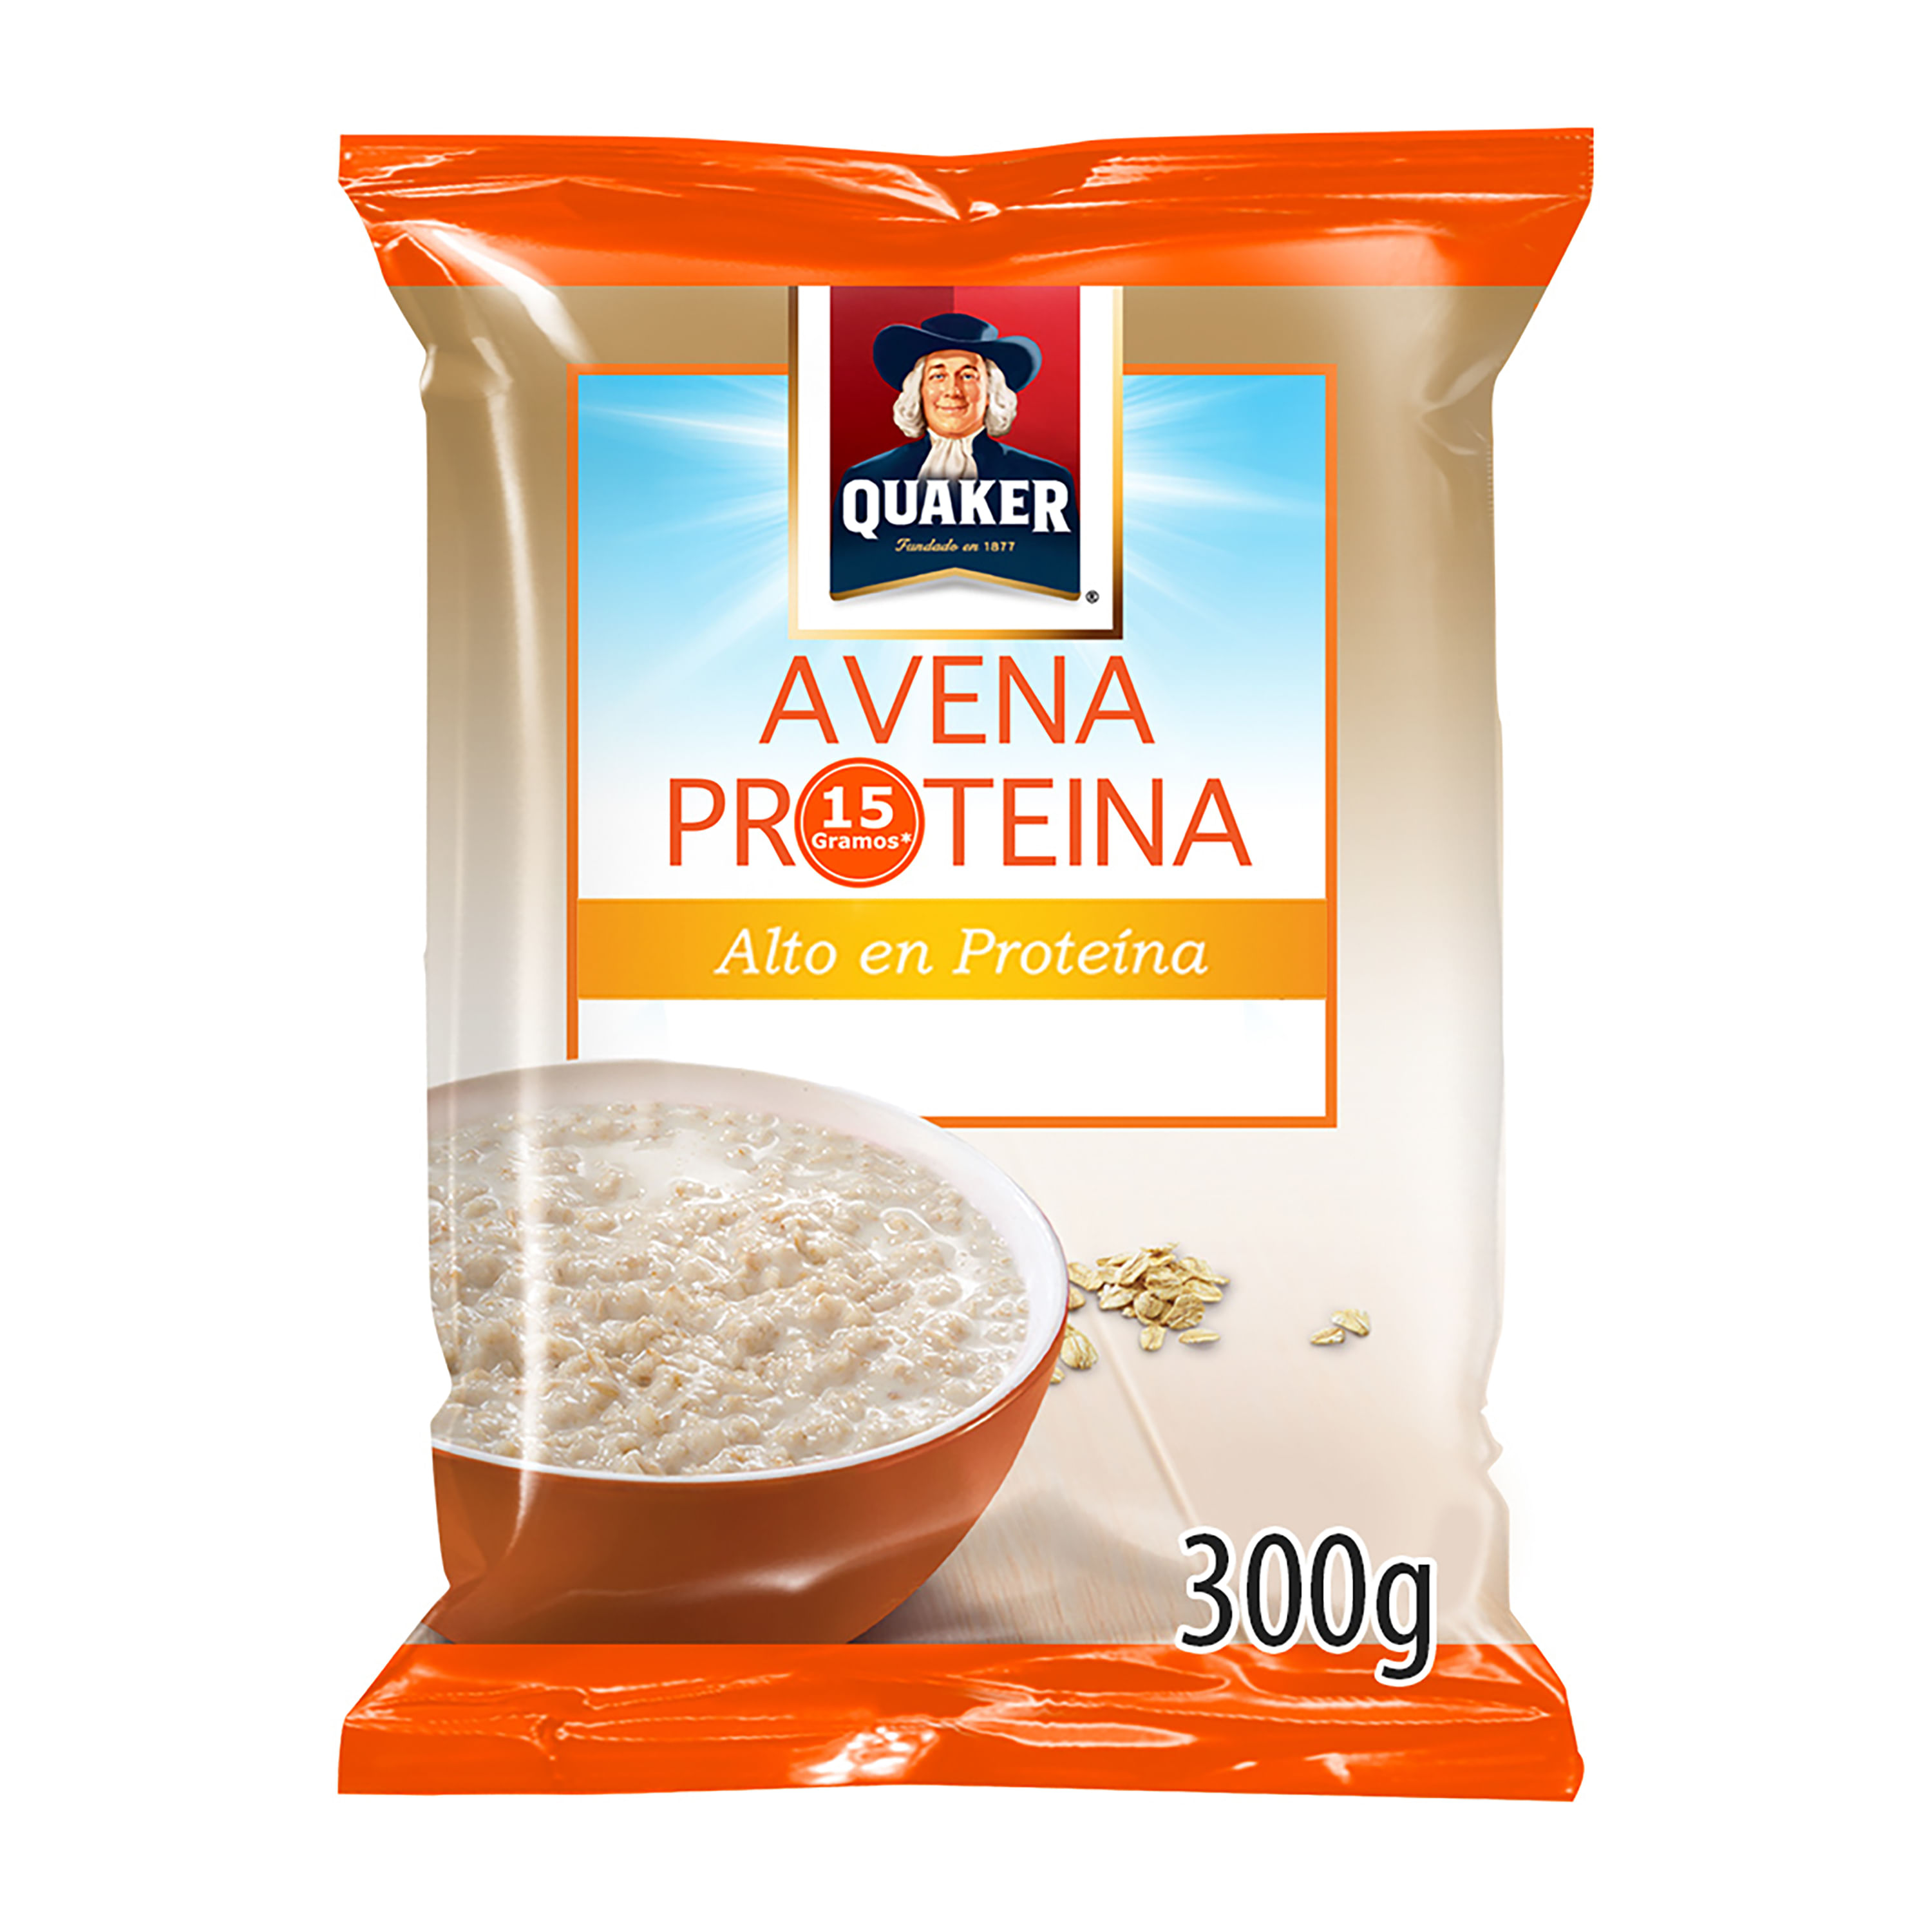 Avena-Quaker-Proteina-300gr-1-9772